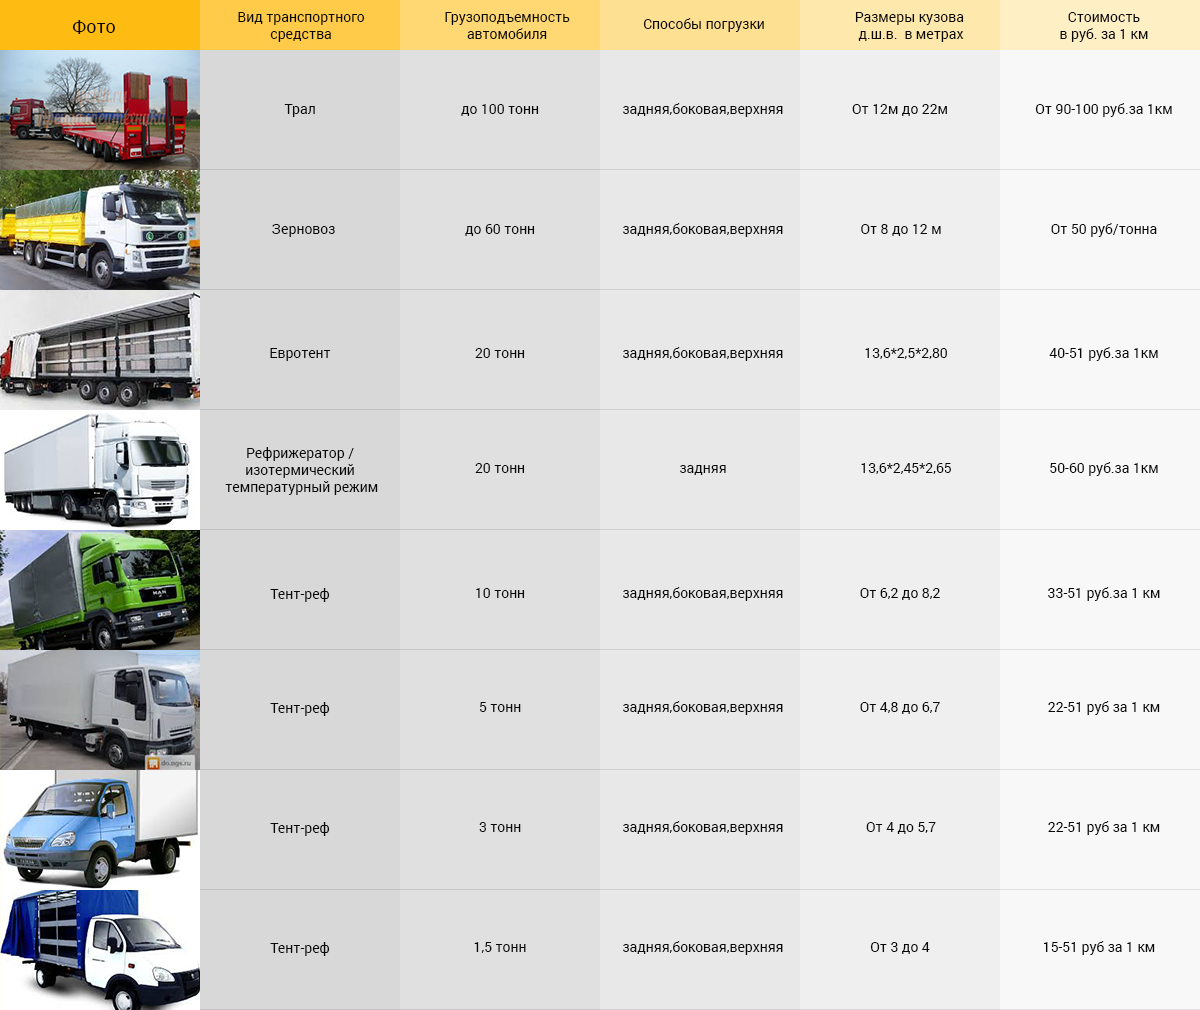 Список грузовых автомобилей. Таблица грузовых автомобилей. Грузоподъёмность грузовых автомобилей. Грузоподъемность грузовых машин. Тоннаж грузовых транспортных средств.